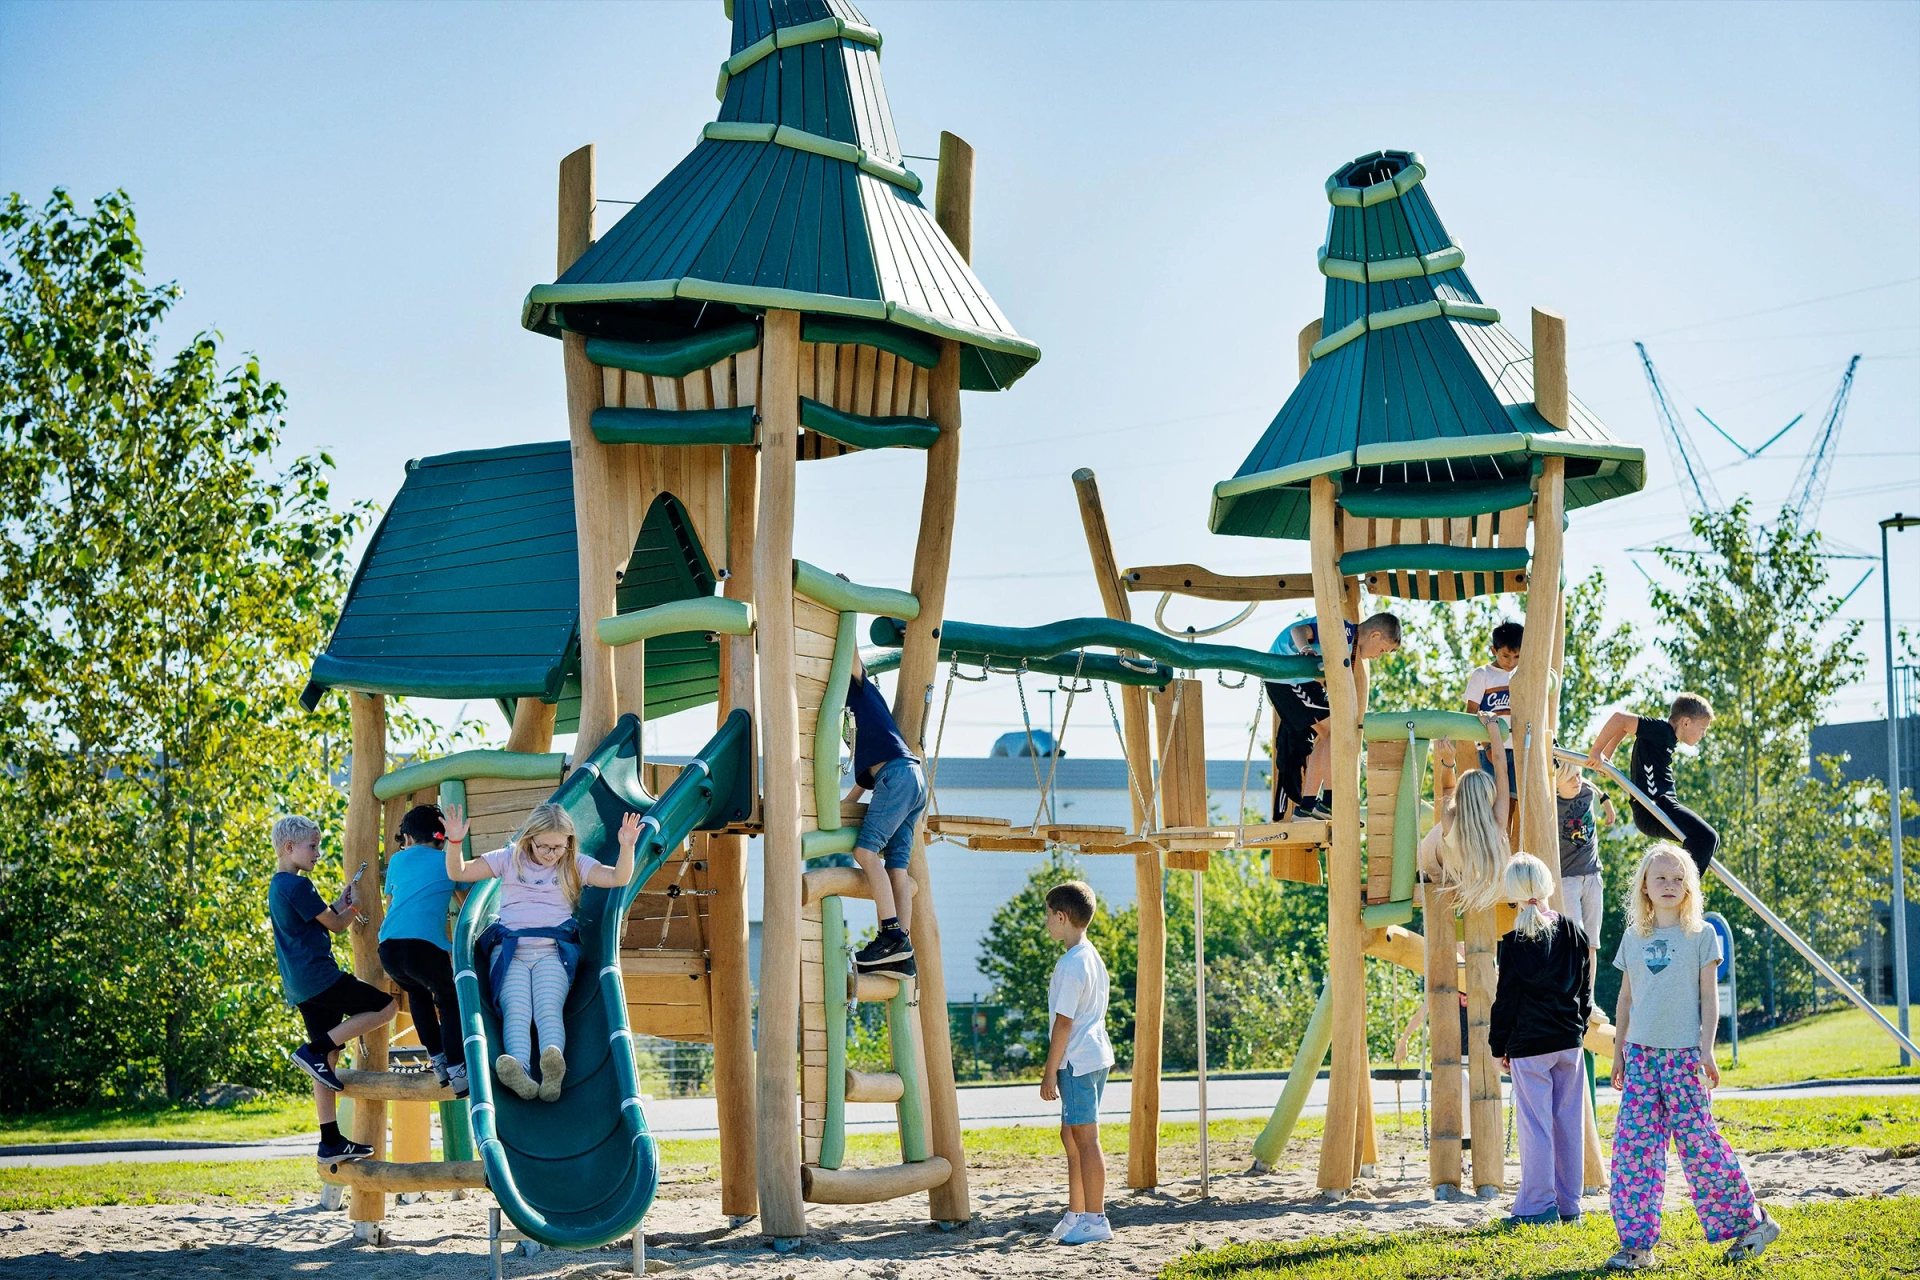 estructuras de juego de madera con temática de fantasía para niños